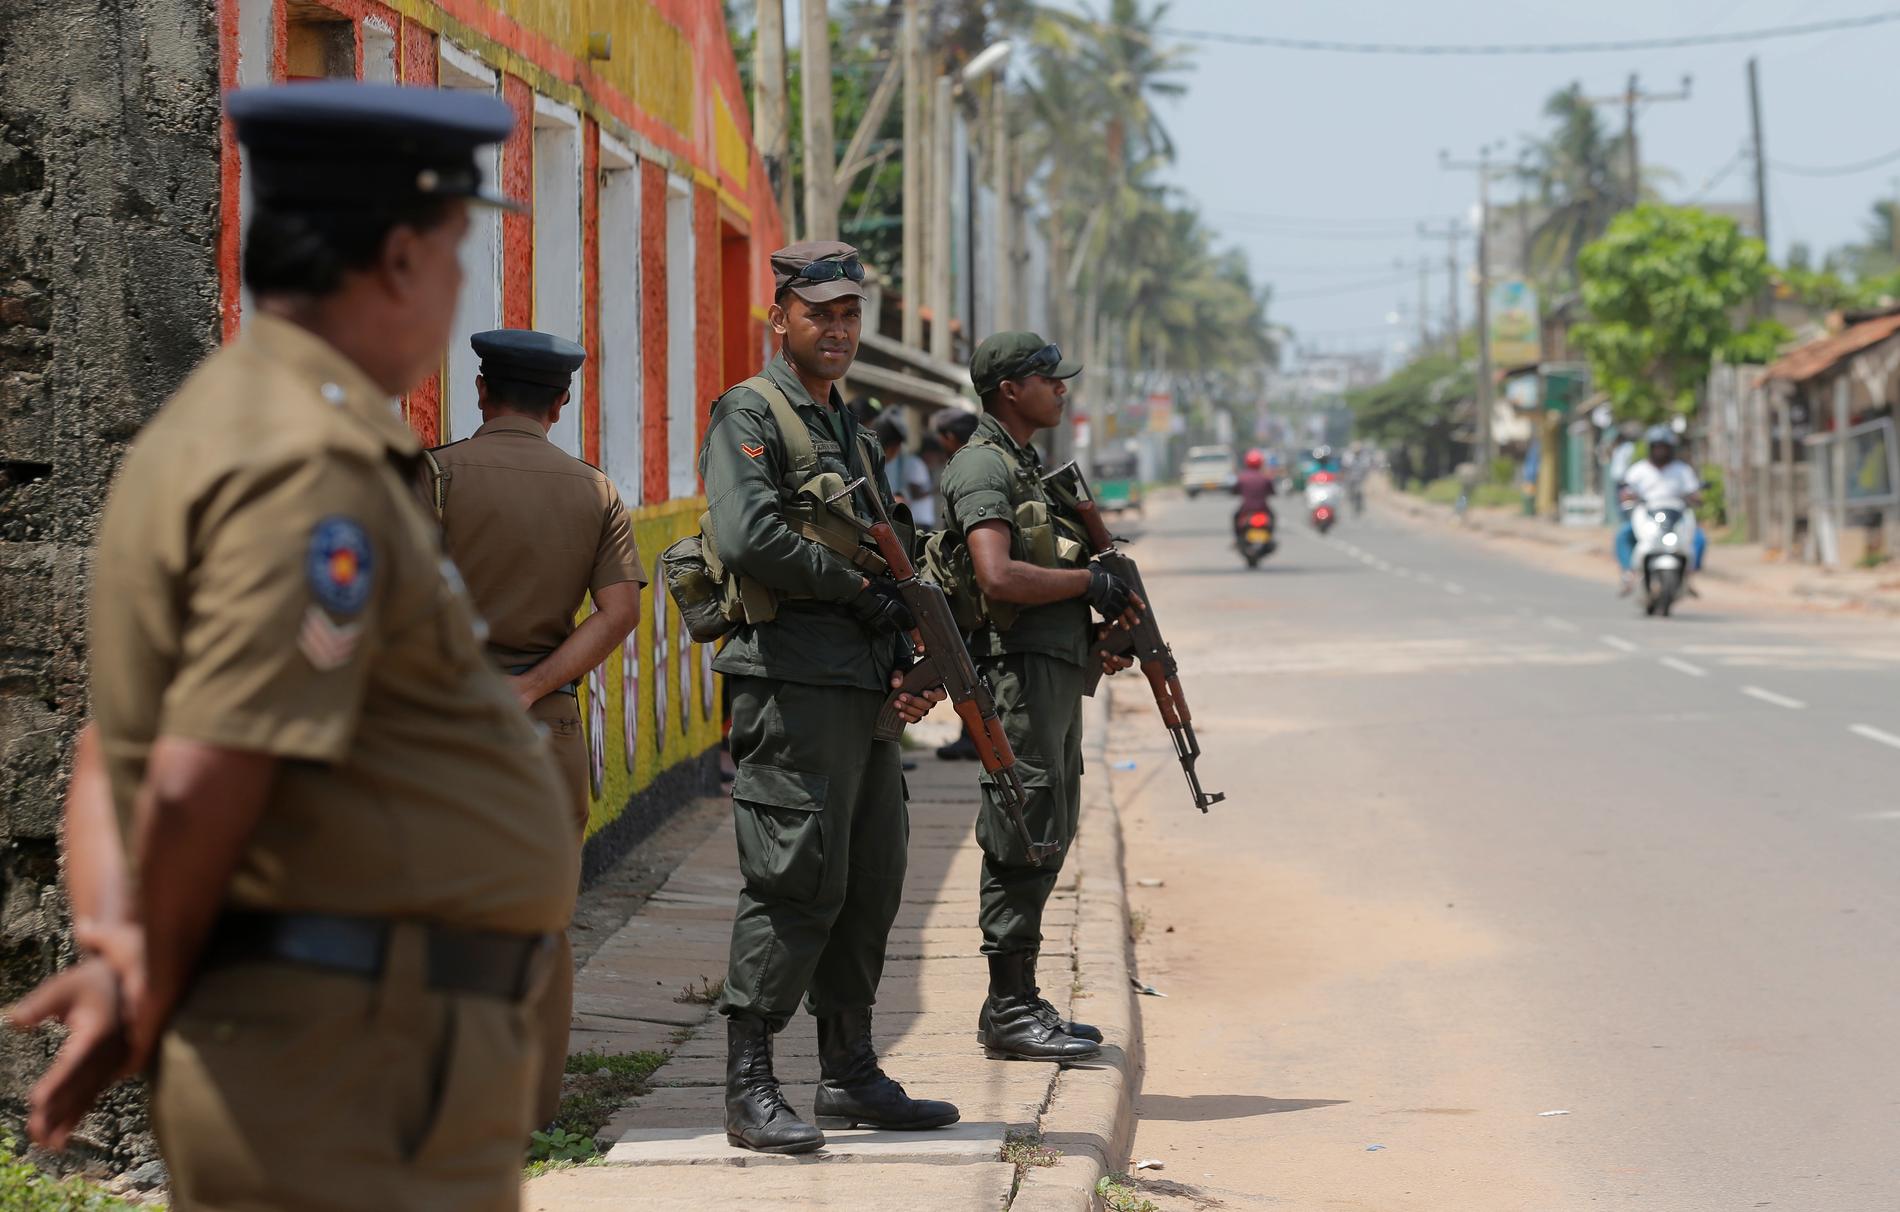 Det är spänt i Sri Lanka efter påskhelgens självmordsdåd. Lankesiska soldater patrullerar i ett muslimskt bostadsområde i en ort drygt tre mil norr om storstaden Colombo. Bild från den 6 maj.